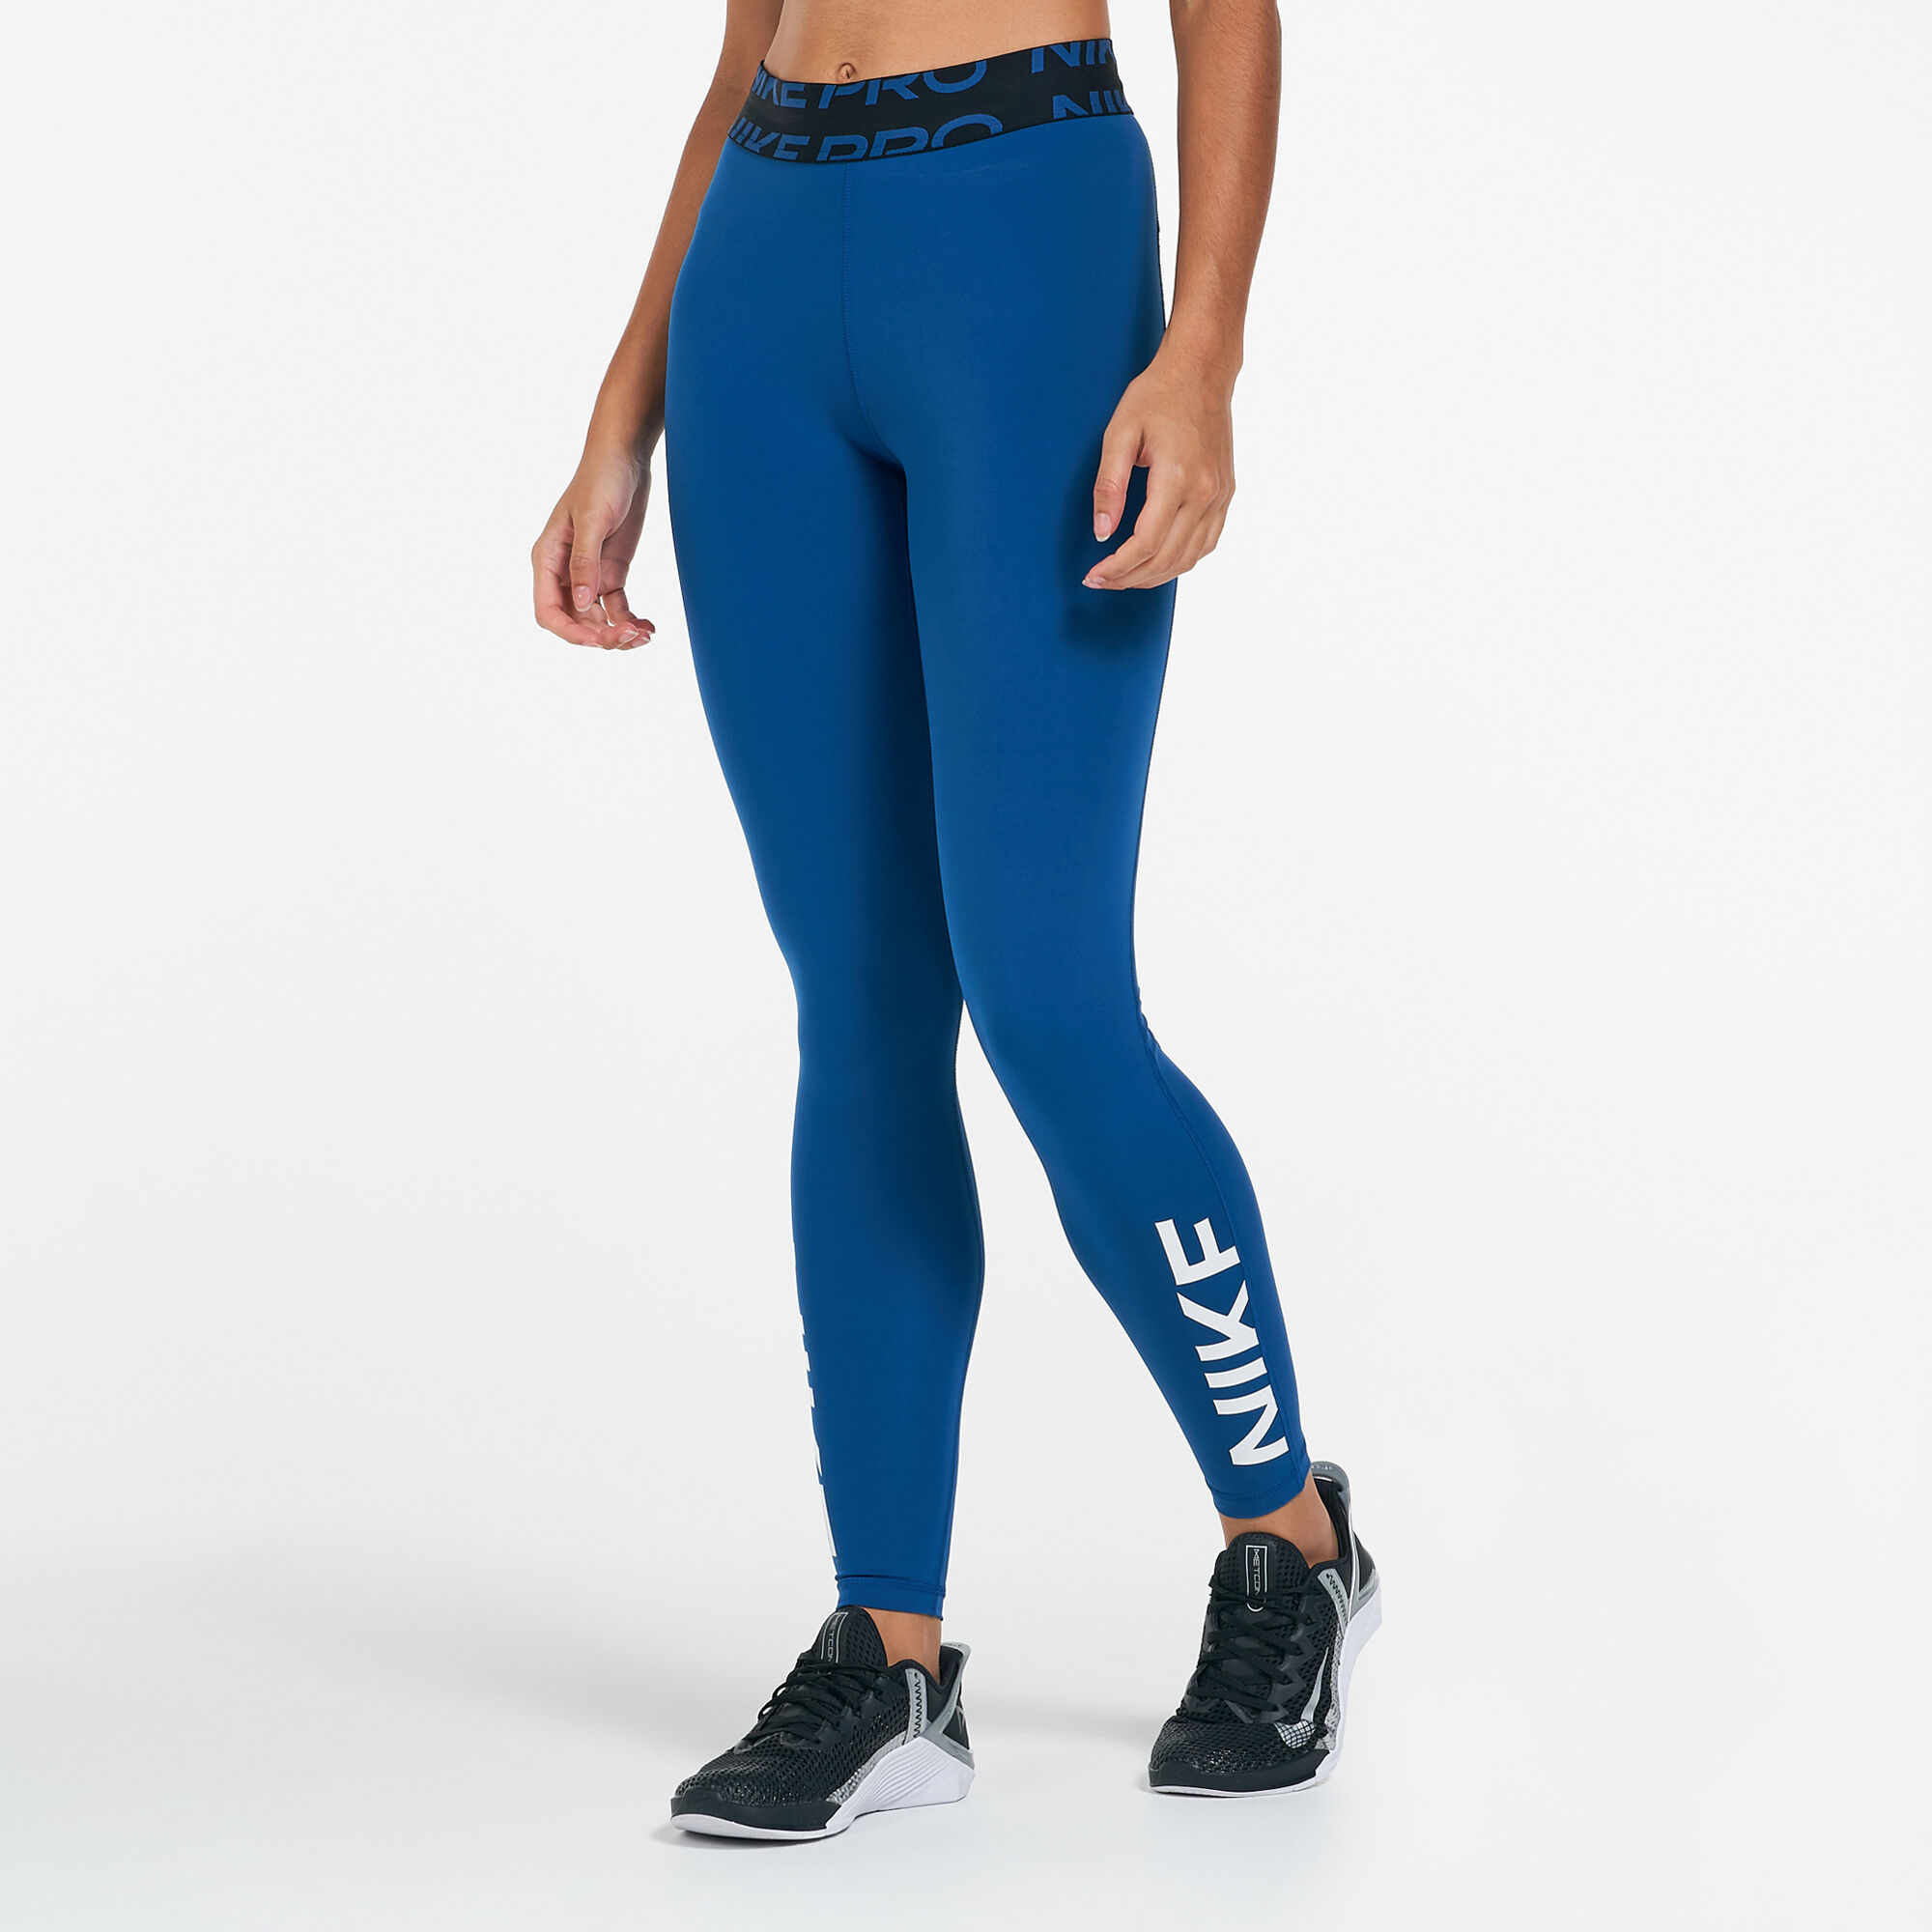 Nike Women's Pro Dri-FIT Mid-Rise Graphic Leggings